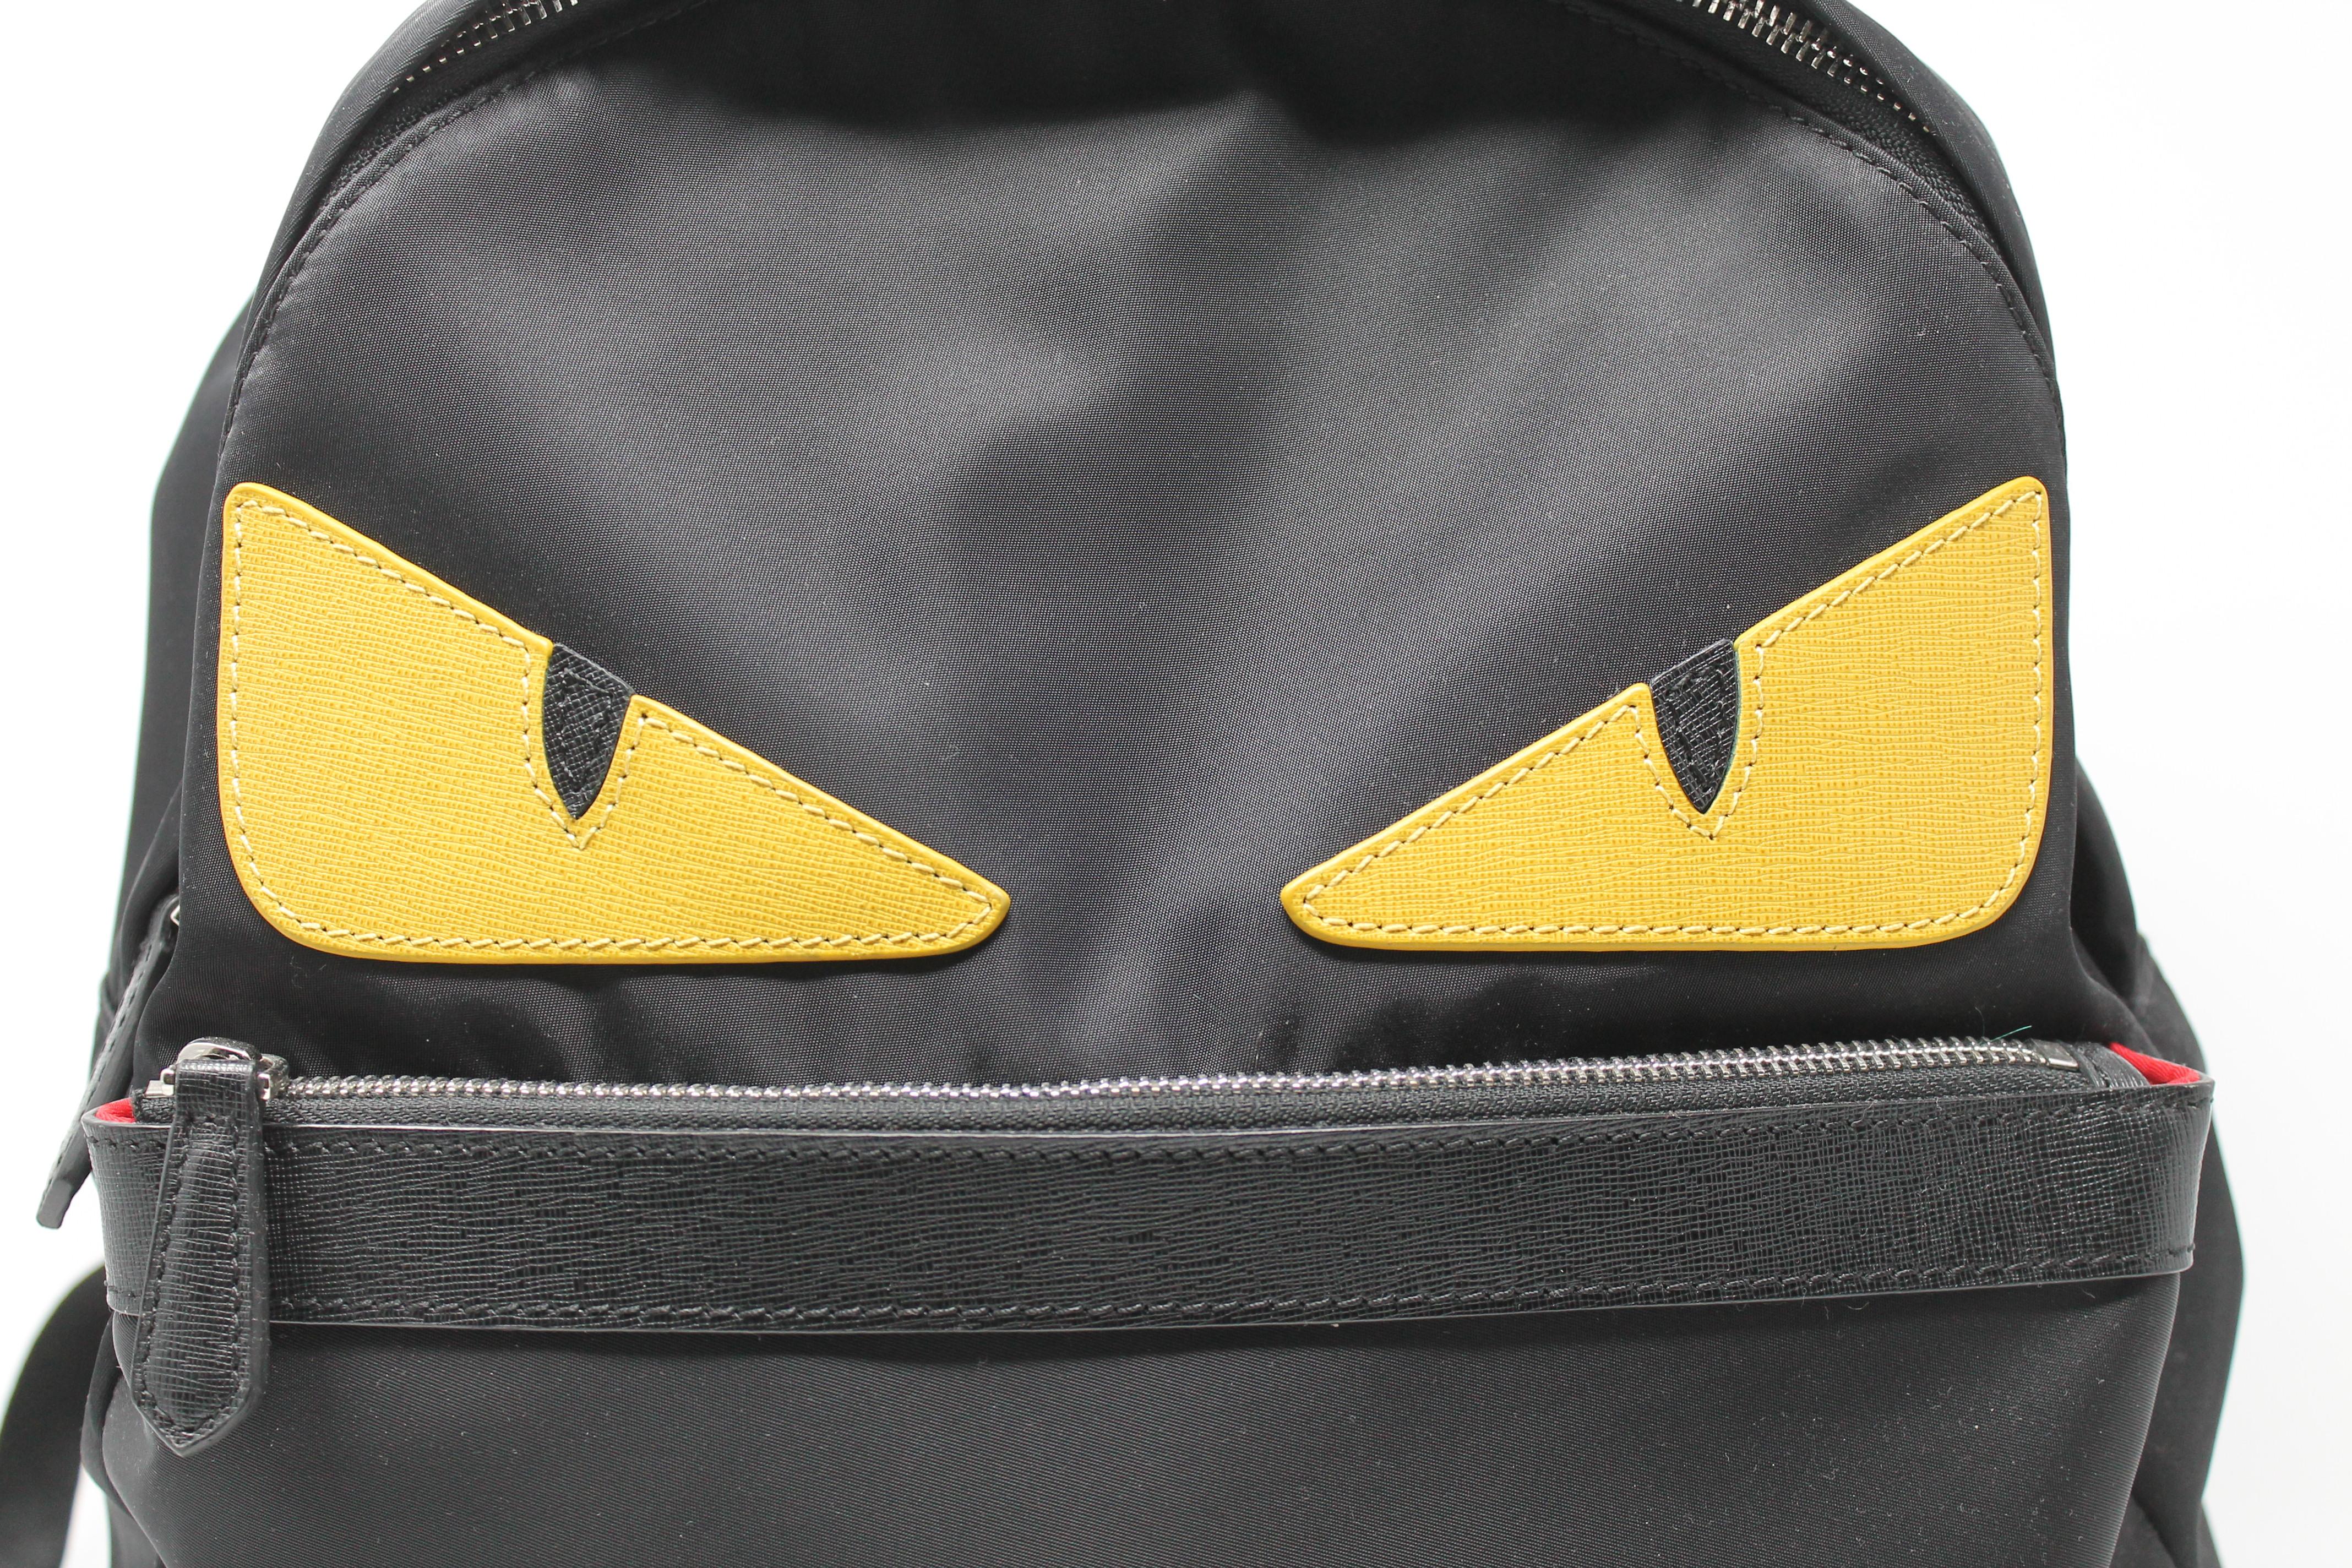 fendi black nylon backpack